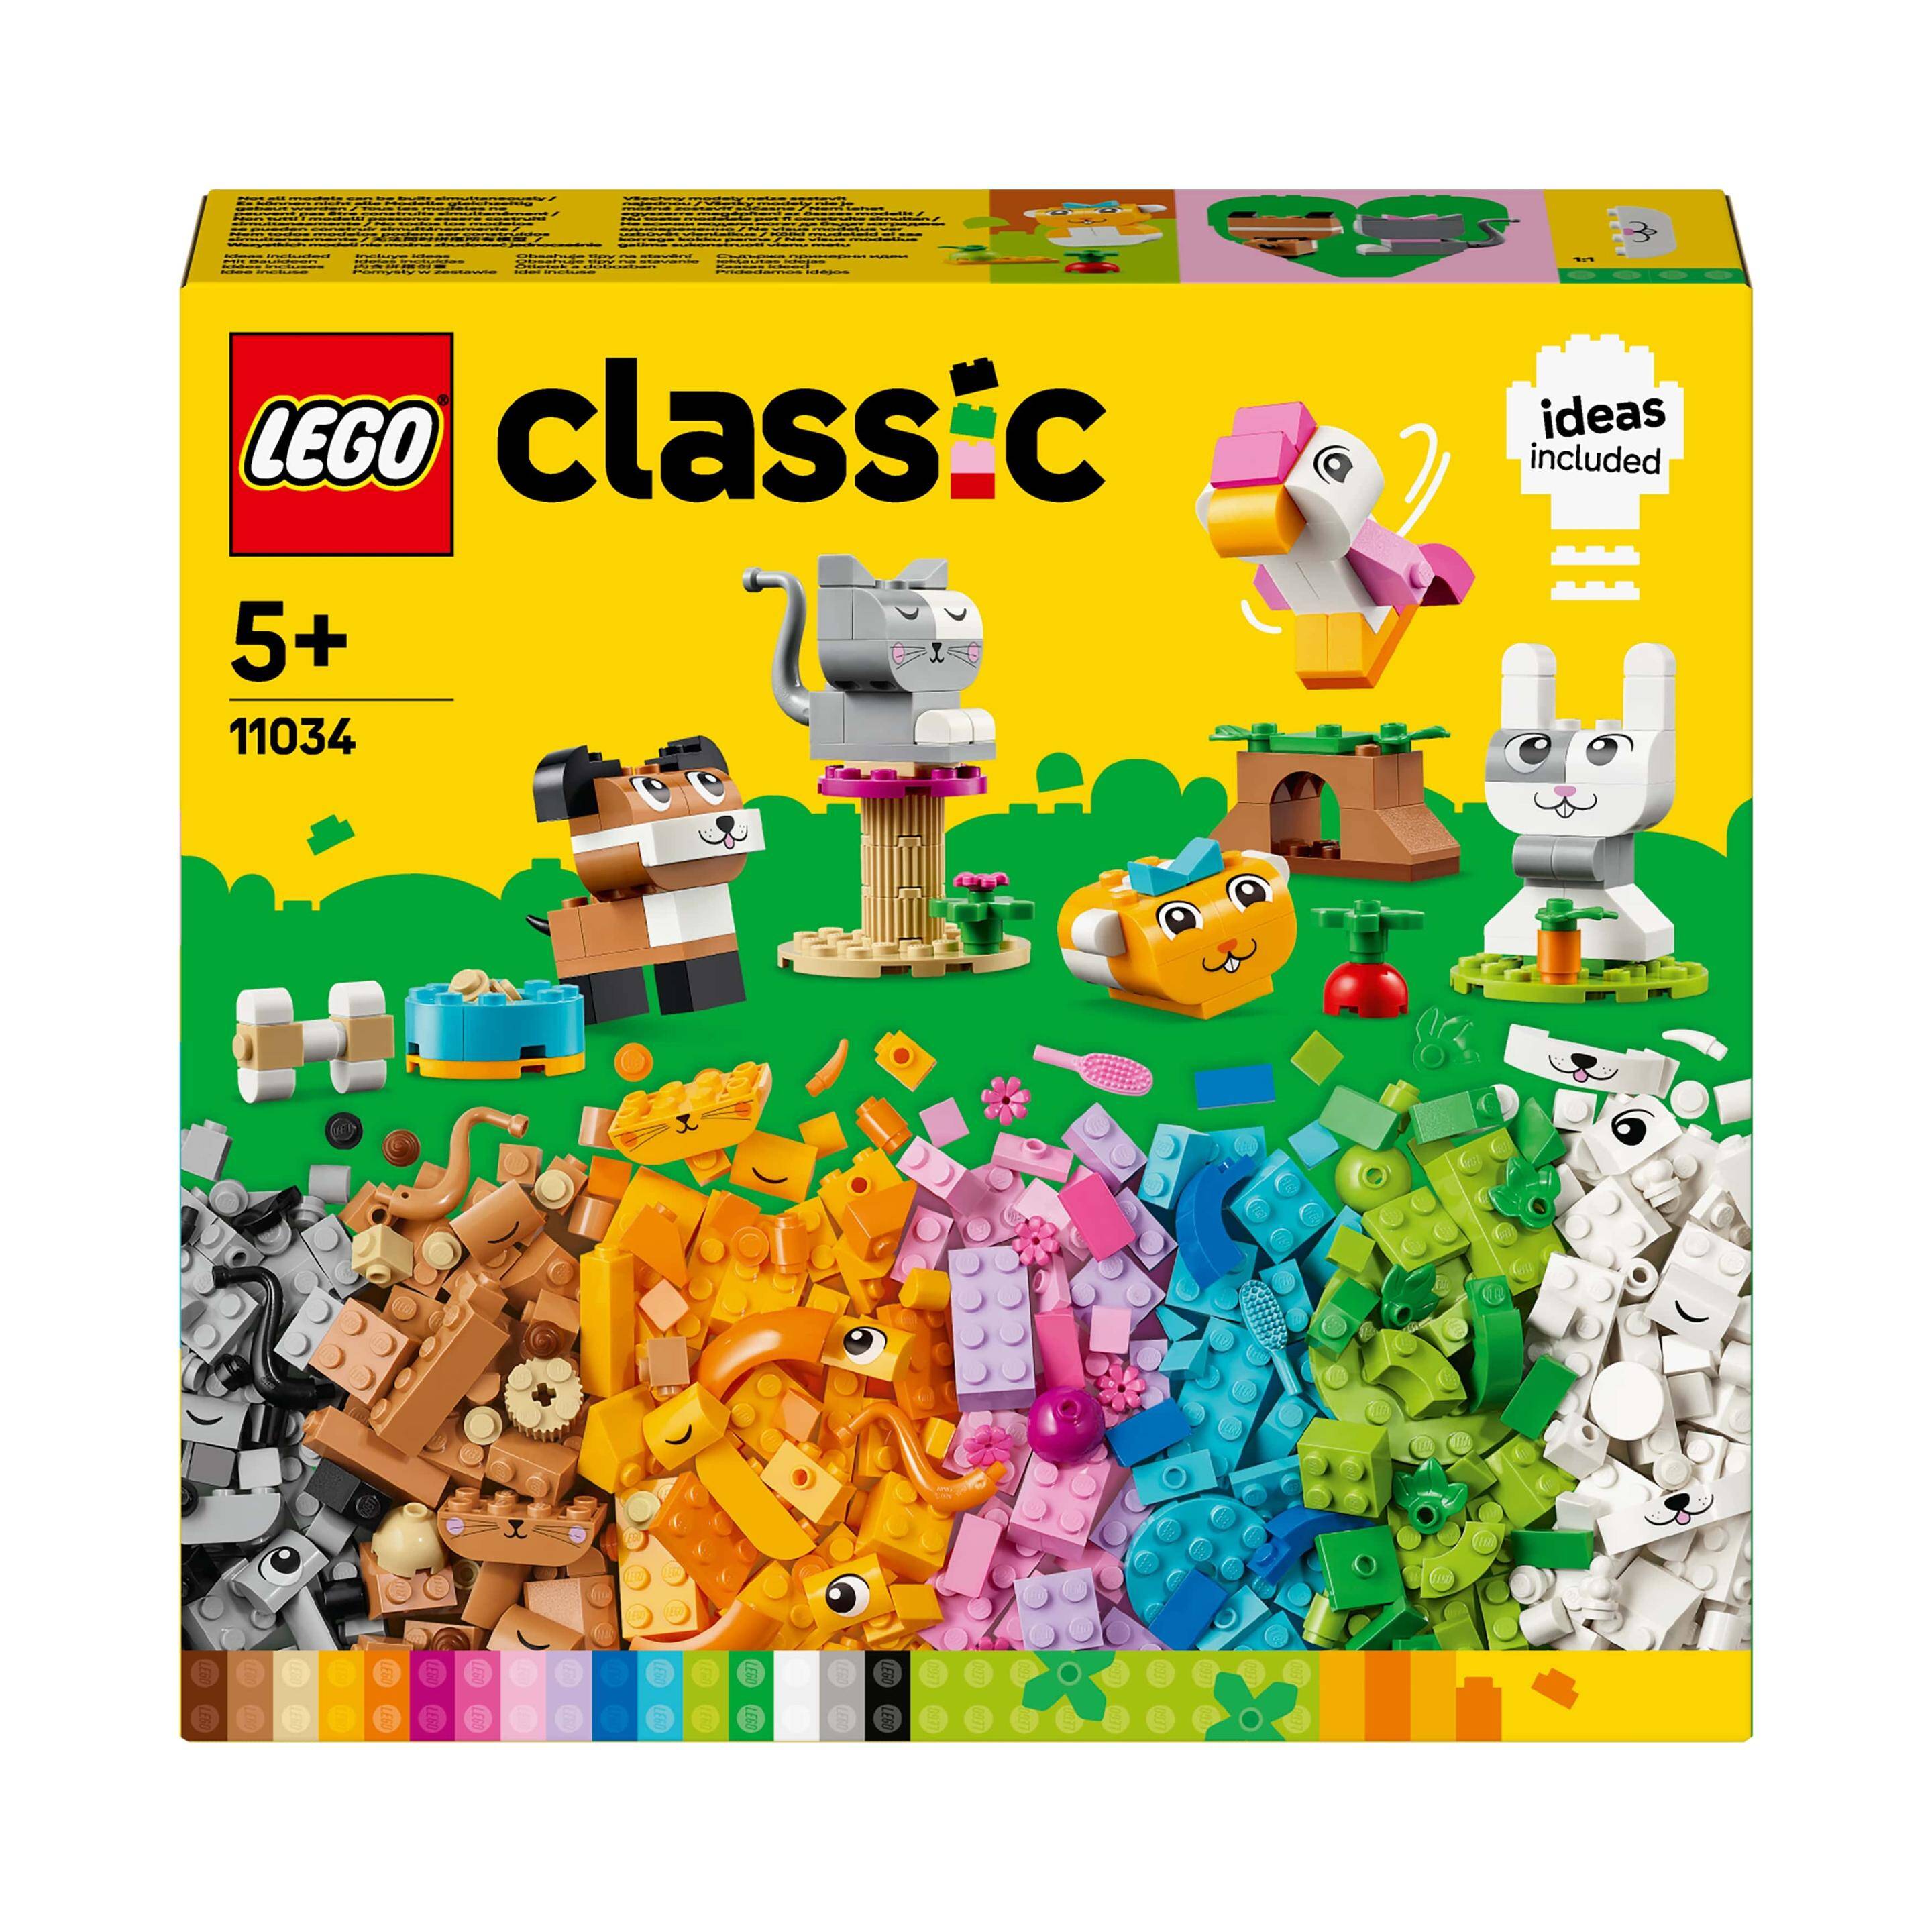 LEGO CLASSIC LG-11034.Kreatywne zwierzątka p4. 450 elementów.